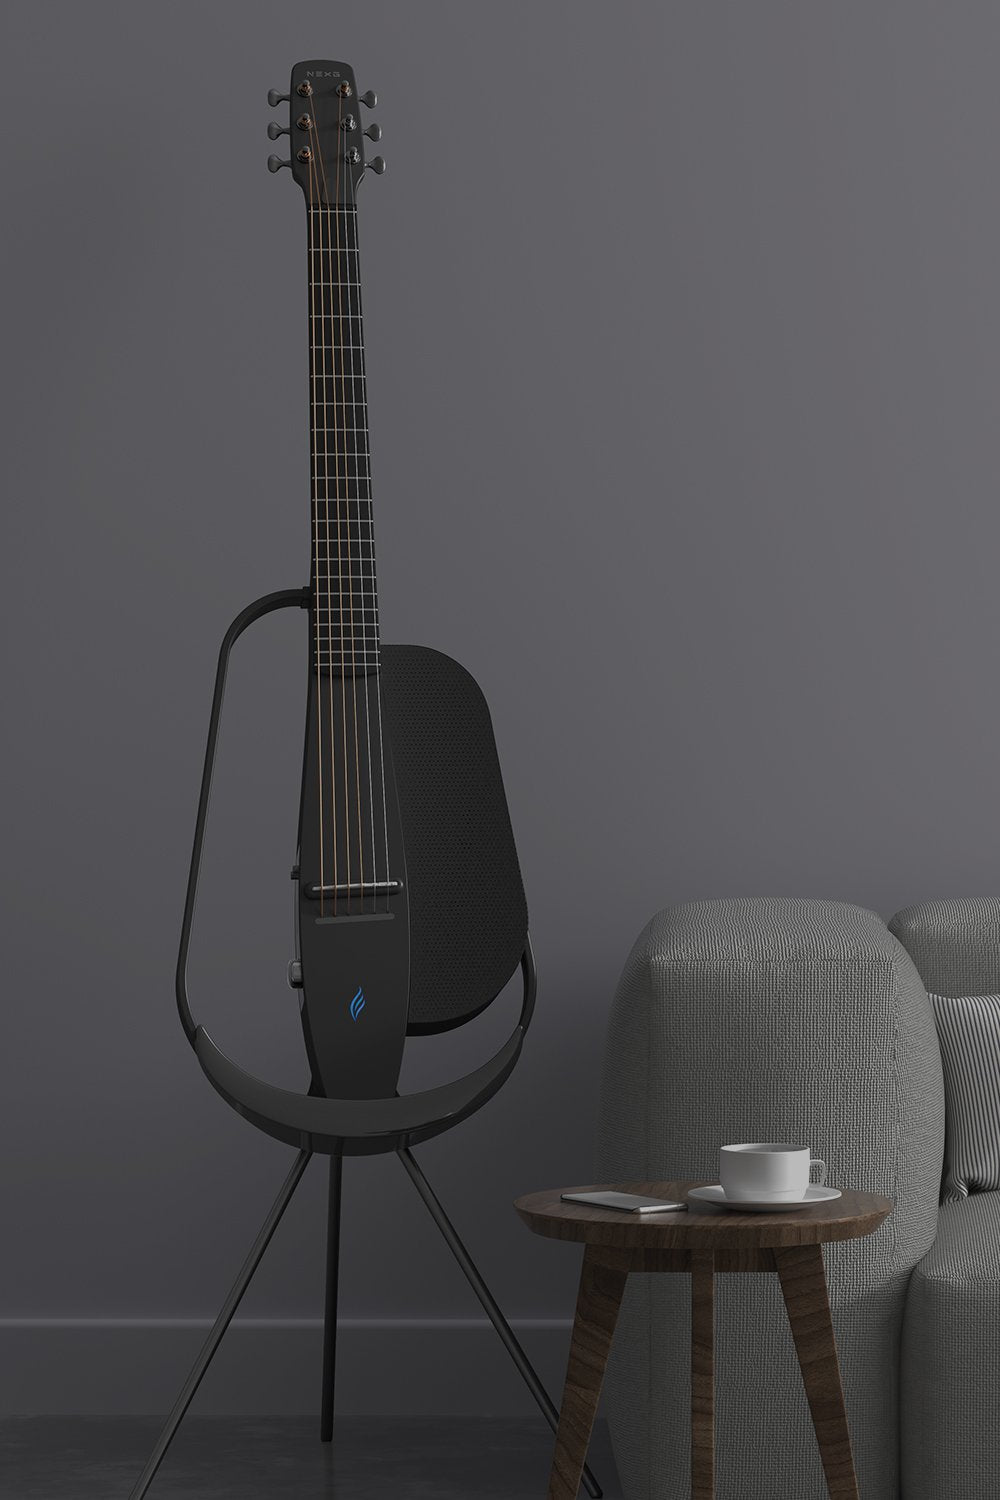 đàn guitar enya nexg 2 màu đen đặt trên đế sạc không dây màu đen bên cạnh bộ ghế sofa đặt trong phòng khách